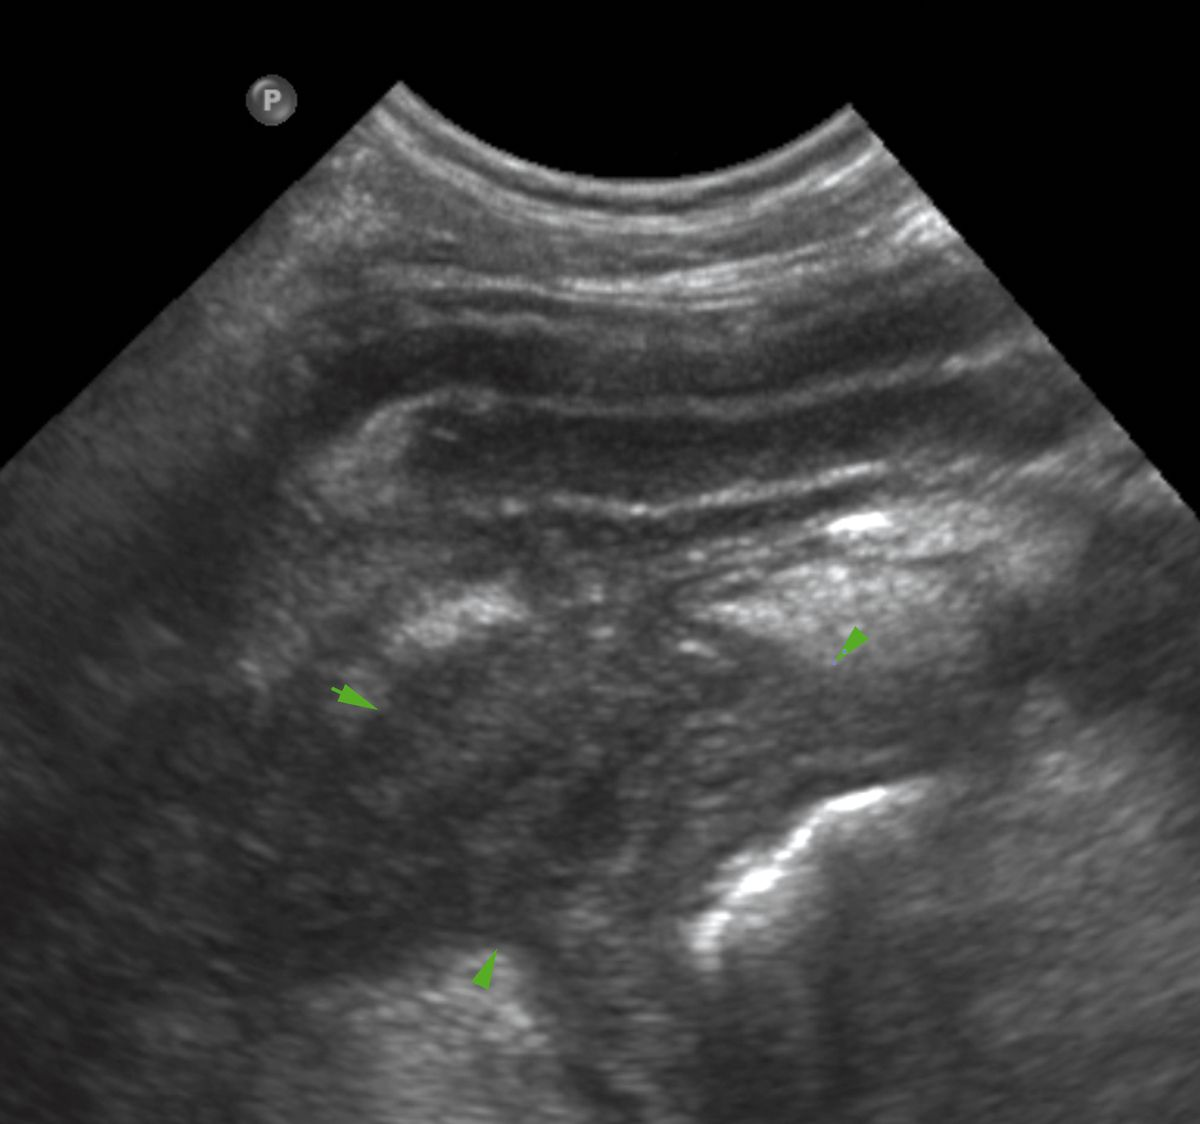 immagine ecografica in corso di pancreatite in un cane: il pancreas appare ispessito ed ipoecogeno (frecce verdi) ed è circondato da grasso, iperecogeno. La parete duodenale adiacente è ispessita.